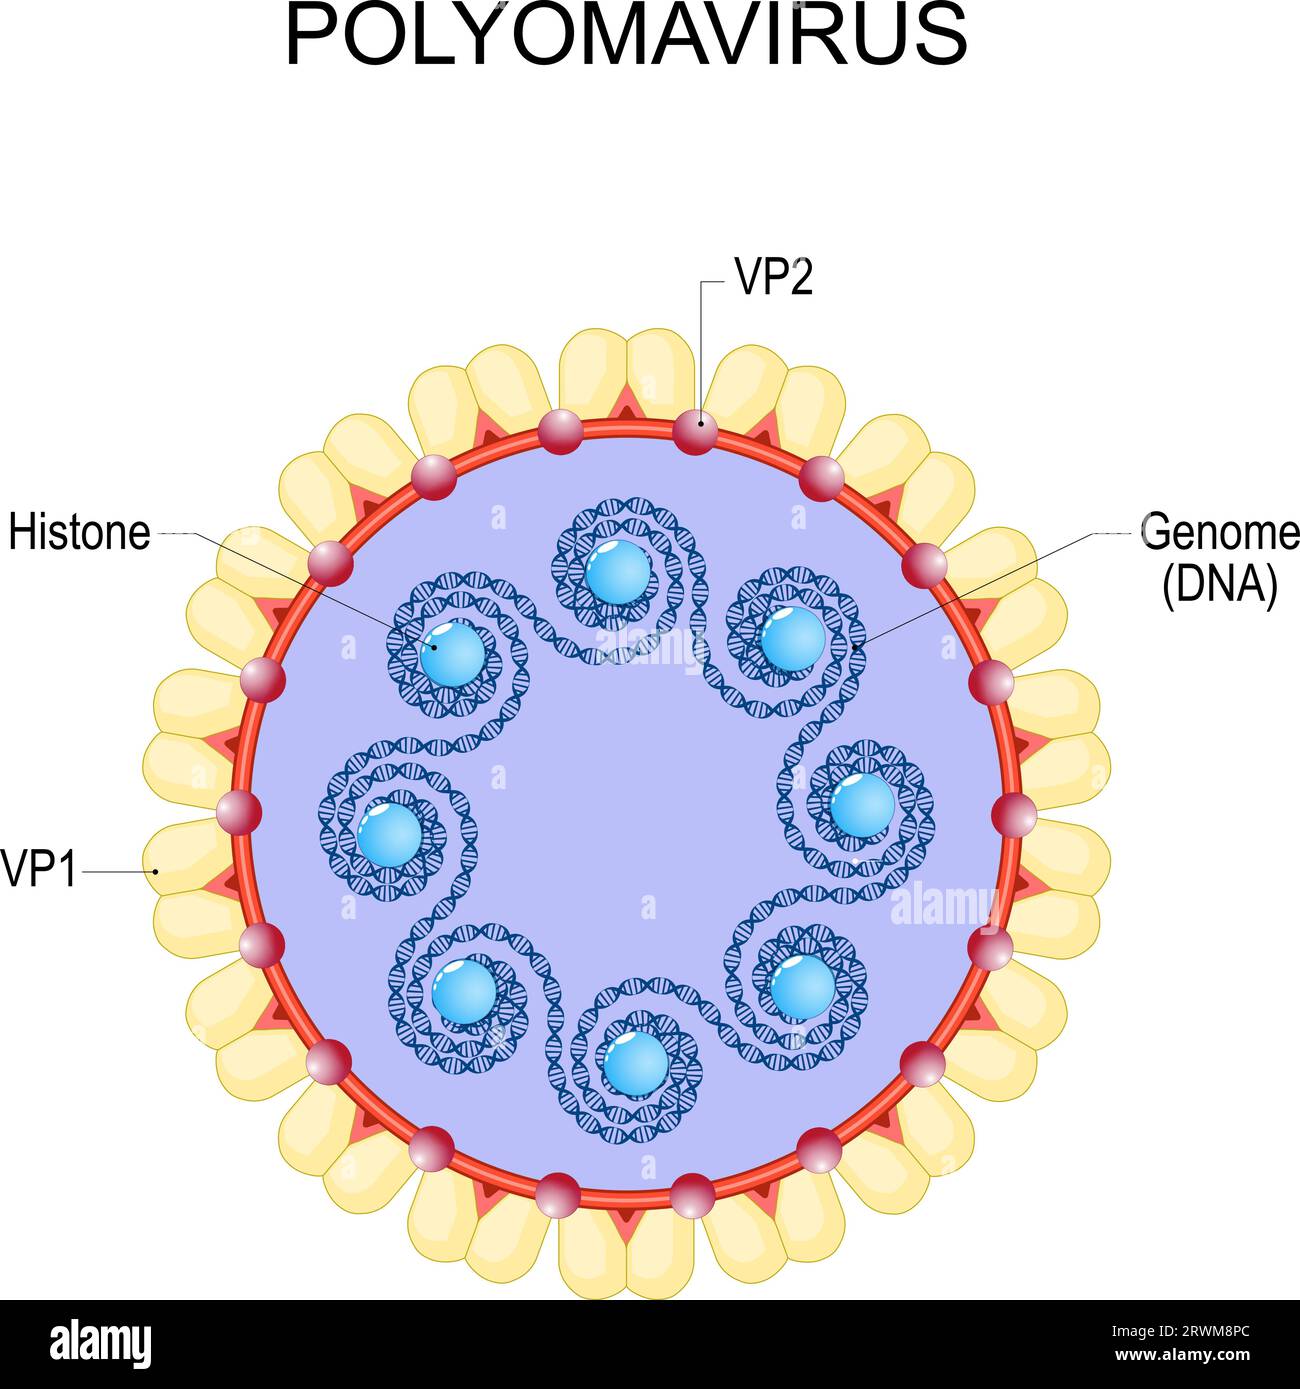 Polyomavirus. Anatomie du virion. Infection virale. Structure et génome du virus à ADN double brin non enveloppé à génome circulaire. virus que cau Illustration de Vecteur